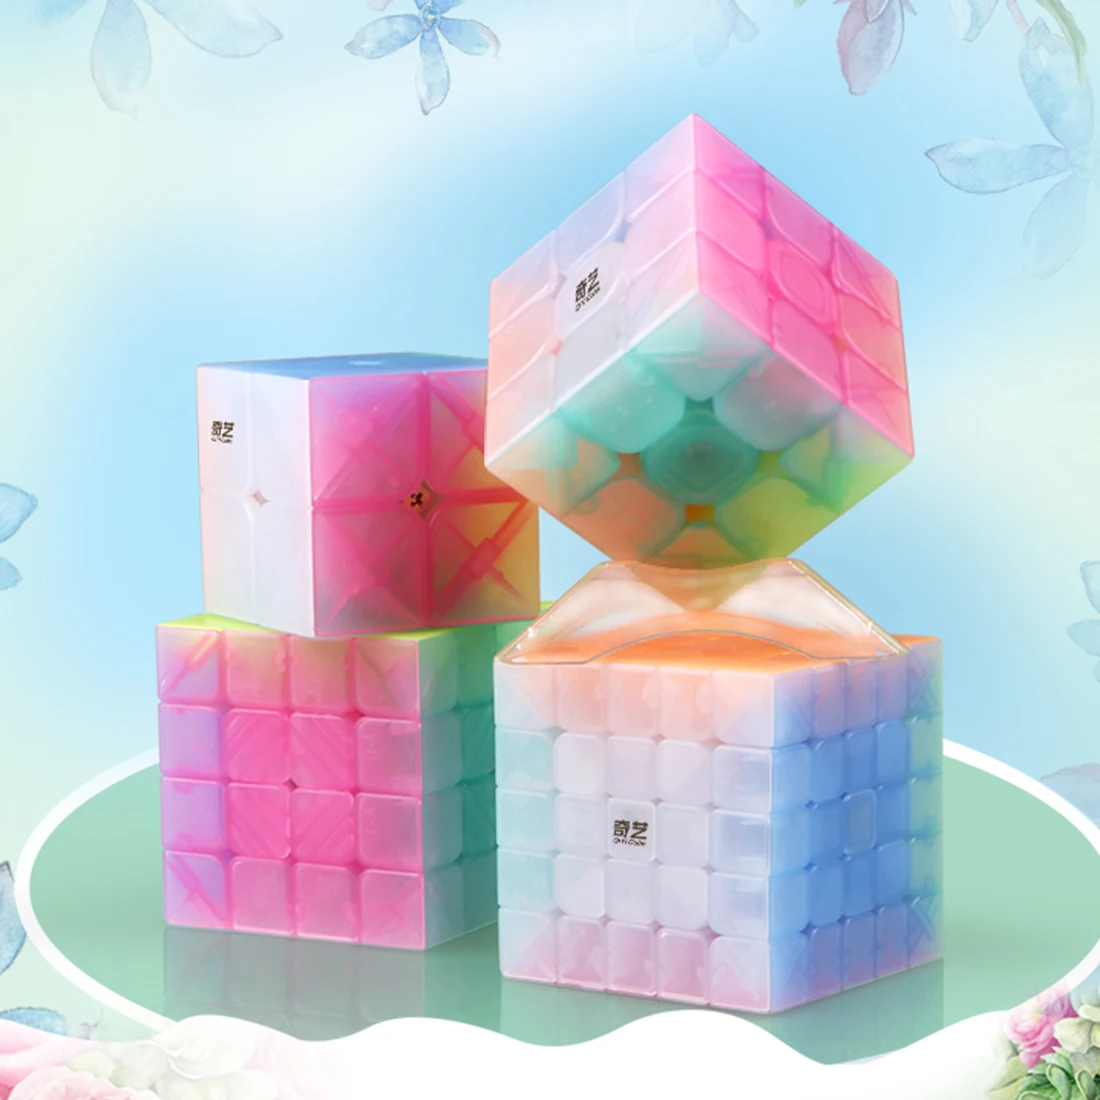 Jelly cube. QIYI Cube Jelly. ЖЕЛЕЙНЫЙ куб. Желатиновый кубик. Jelly Cube антистресс.